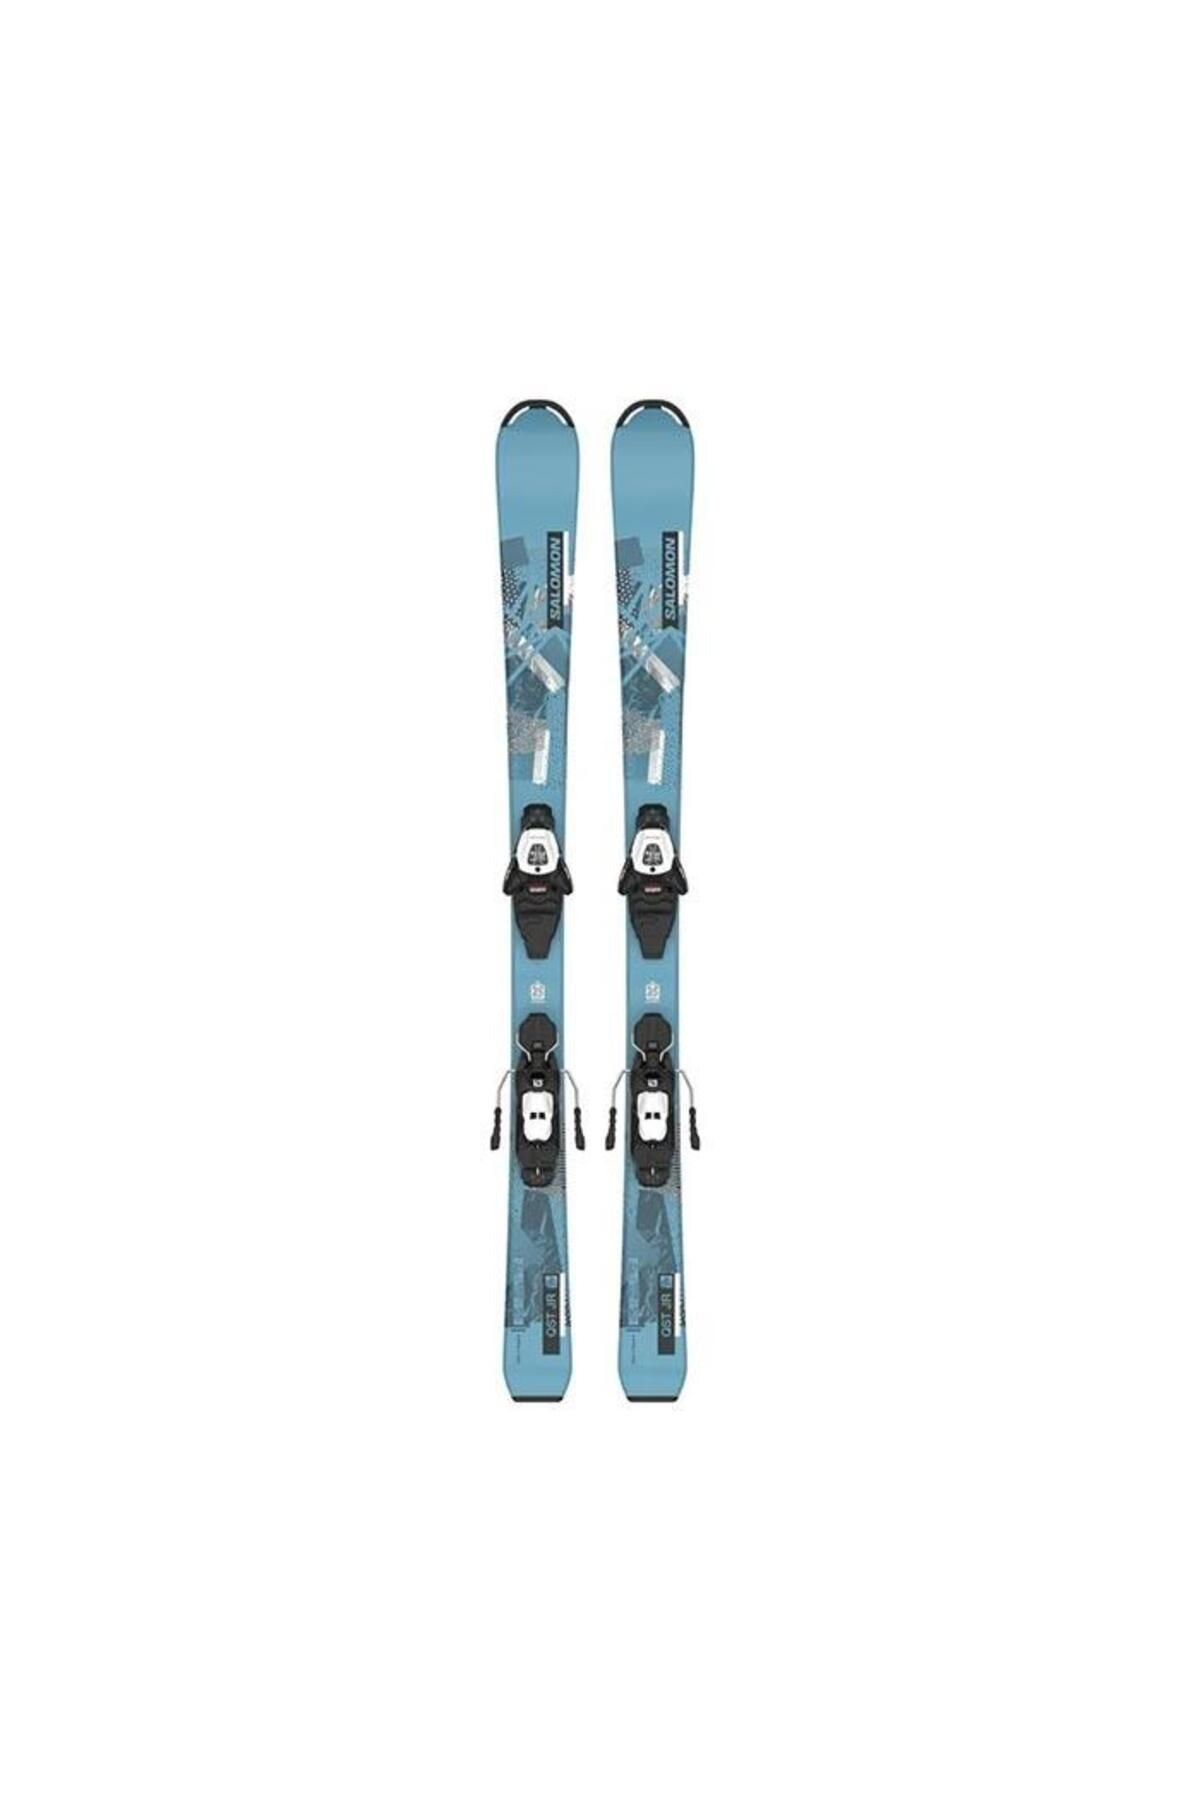 Atomic Vantage Jr. Çocuk Kayak Takımı Mavi Fiyatı, Yorumları